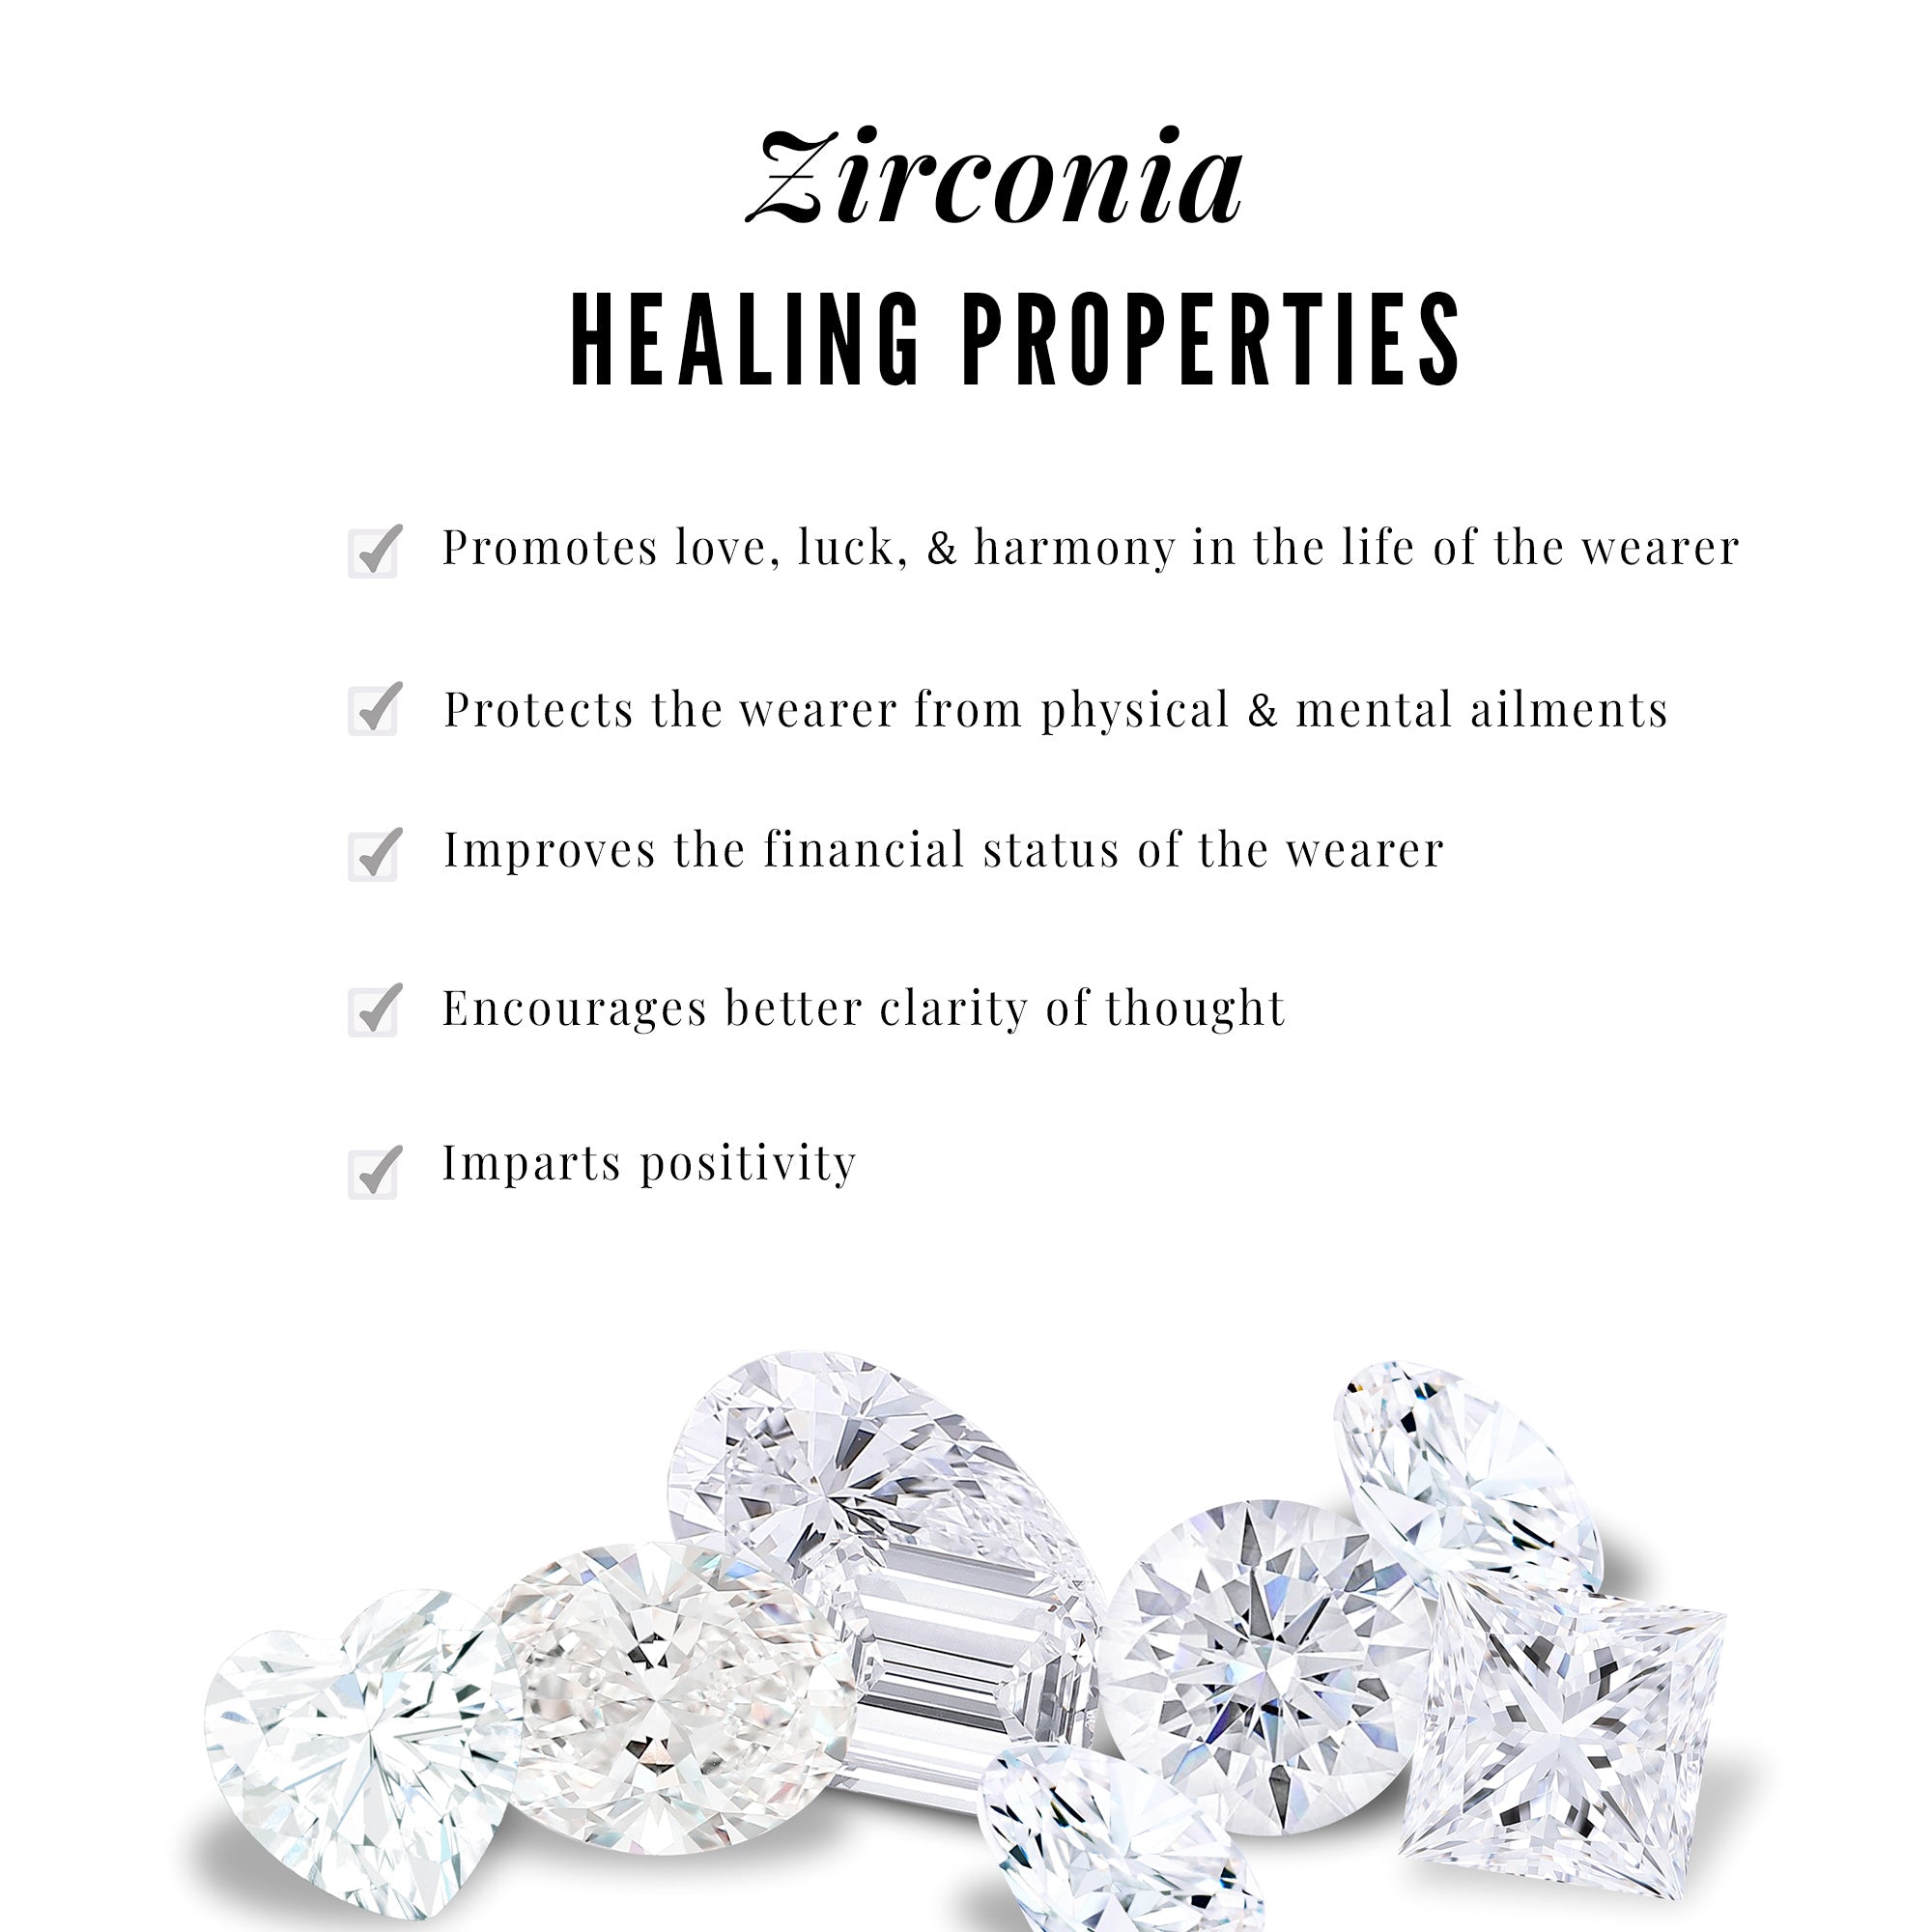 1 CT Certified Baguette and Round Zircon Minimal Chevron Necklace Zircon - ( AAAA ) - Quality - Rosec Jewels